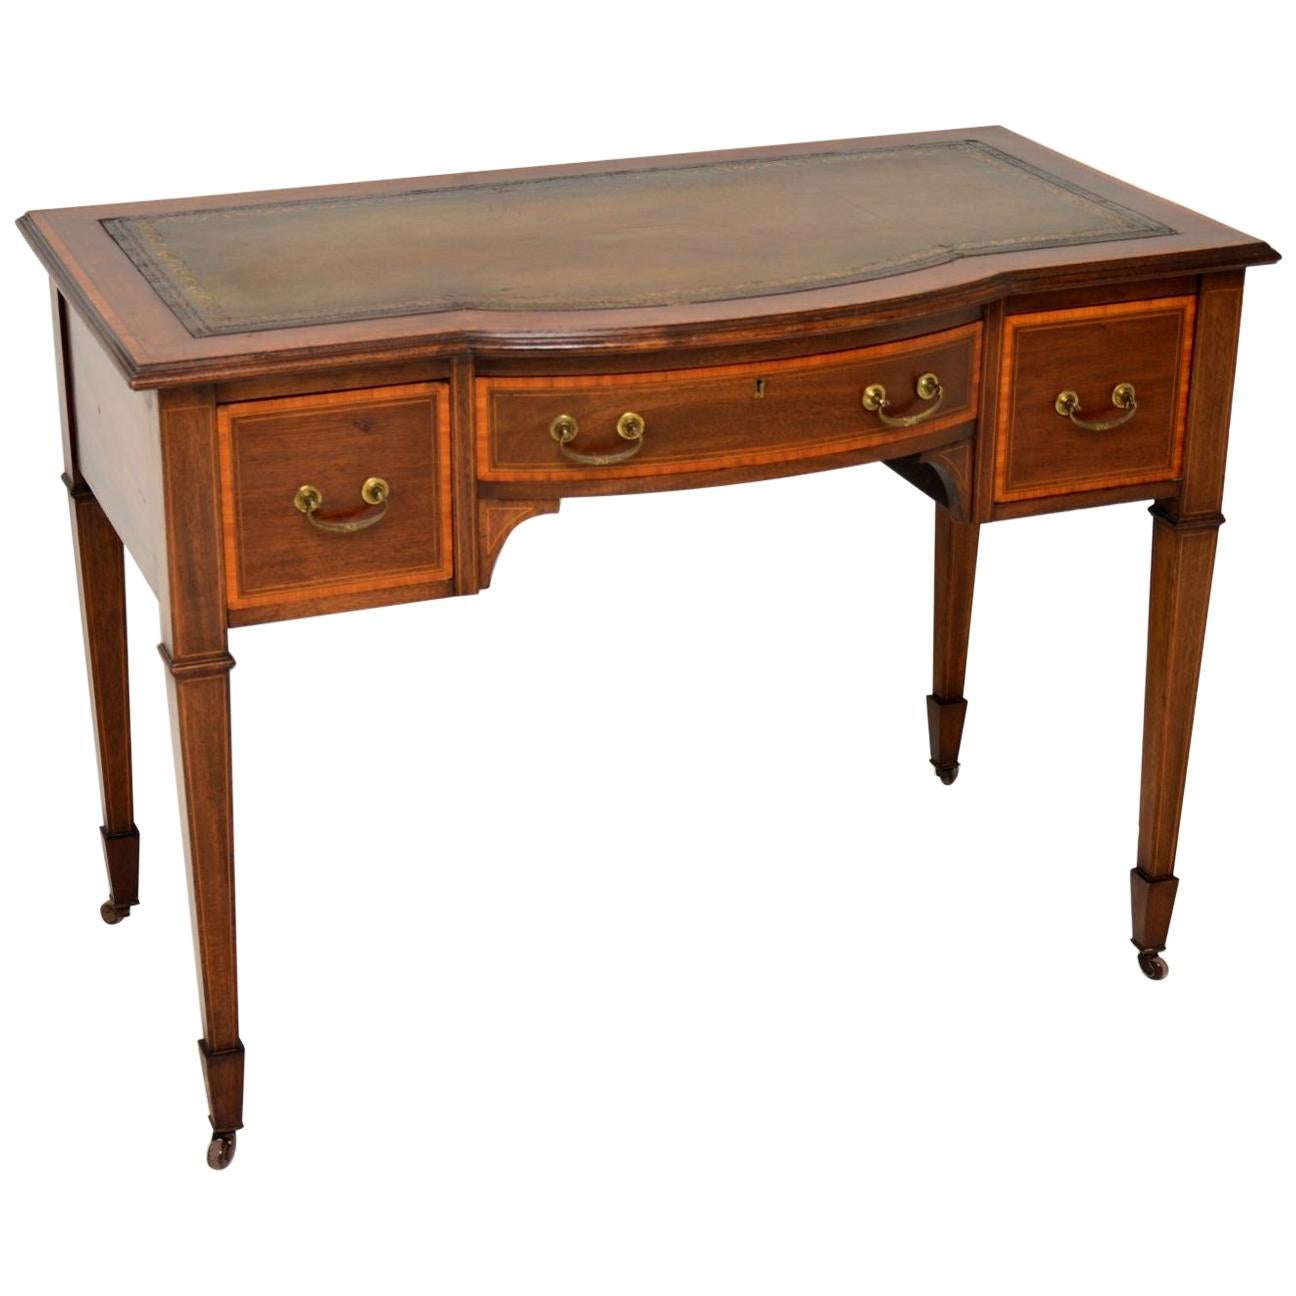 Antique Edwardian Inlaid Mahogany Desk / Writing Table